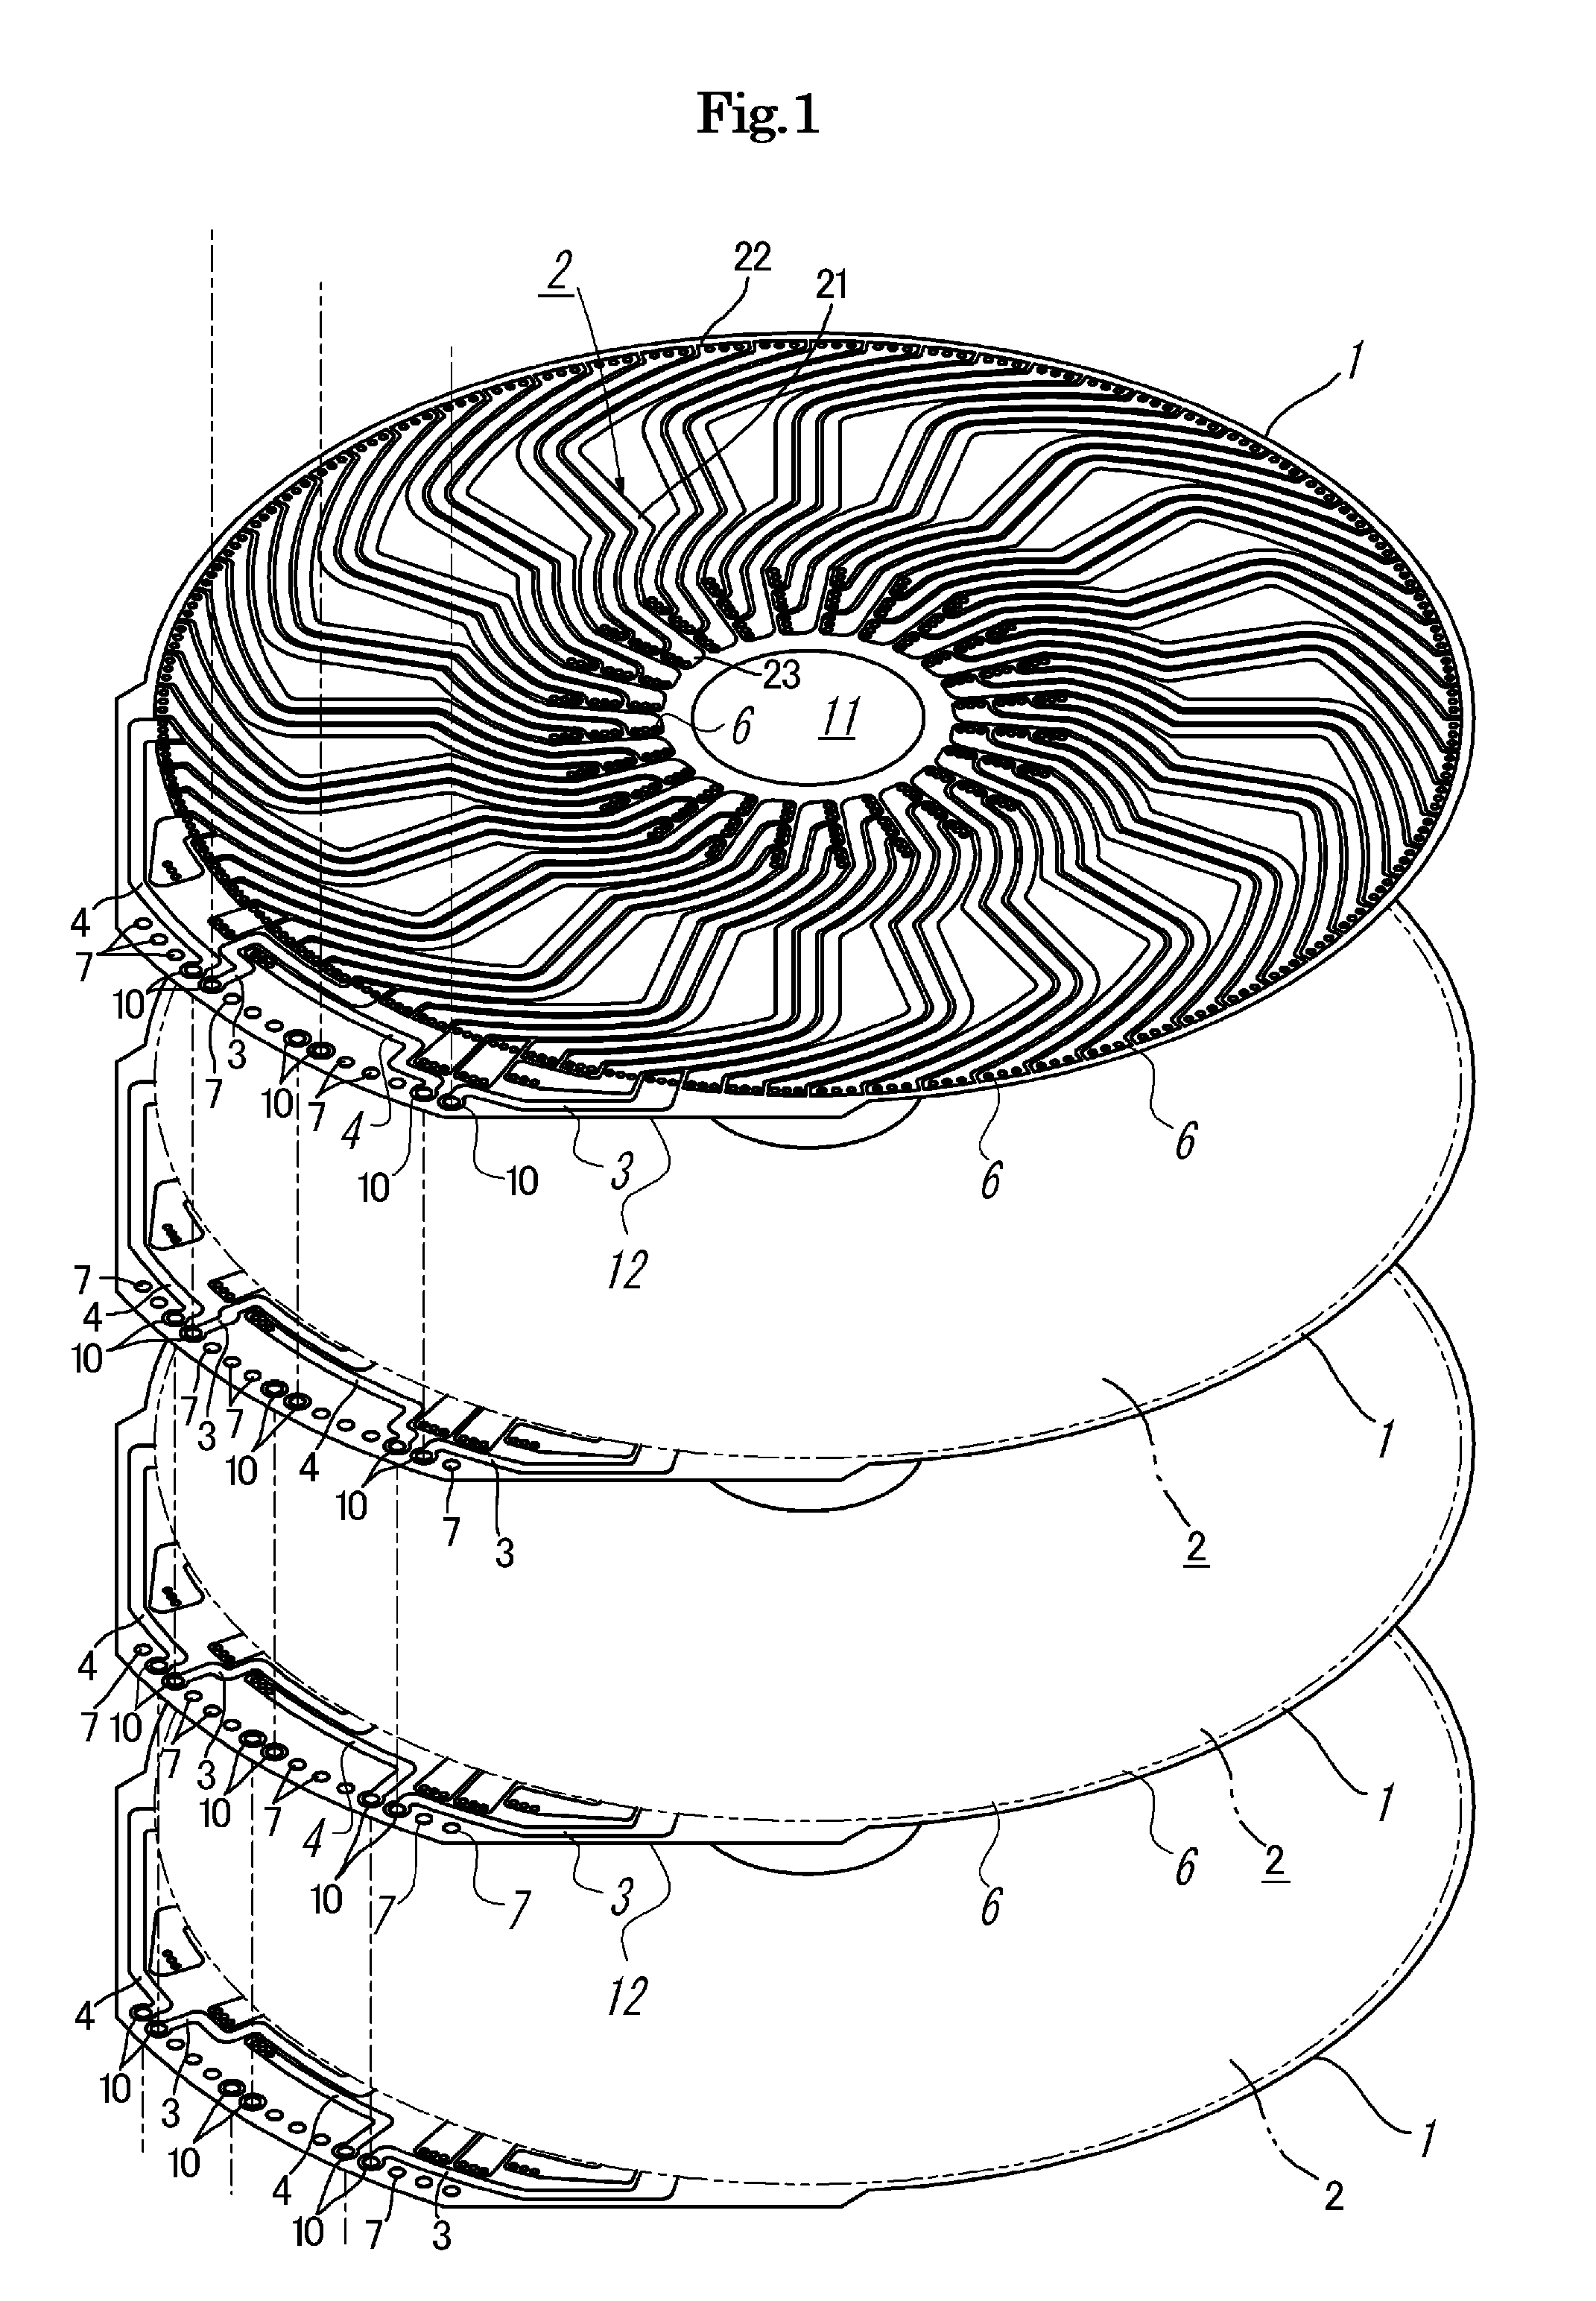 Coil apparatus